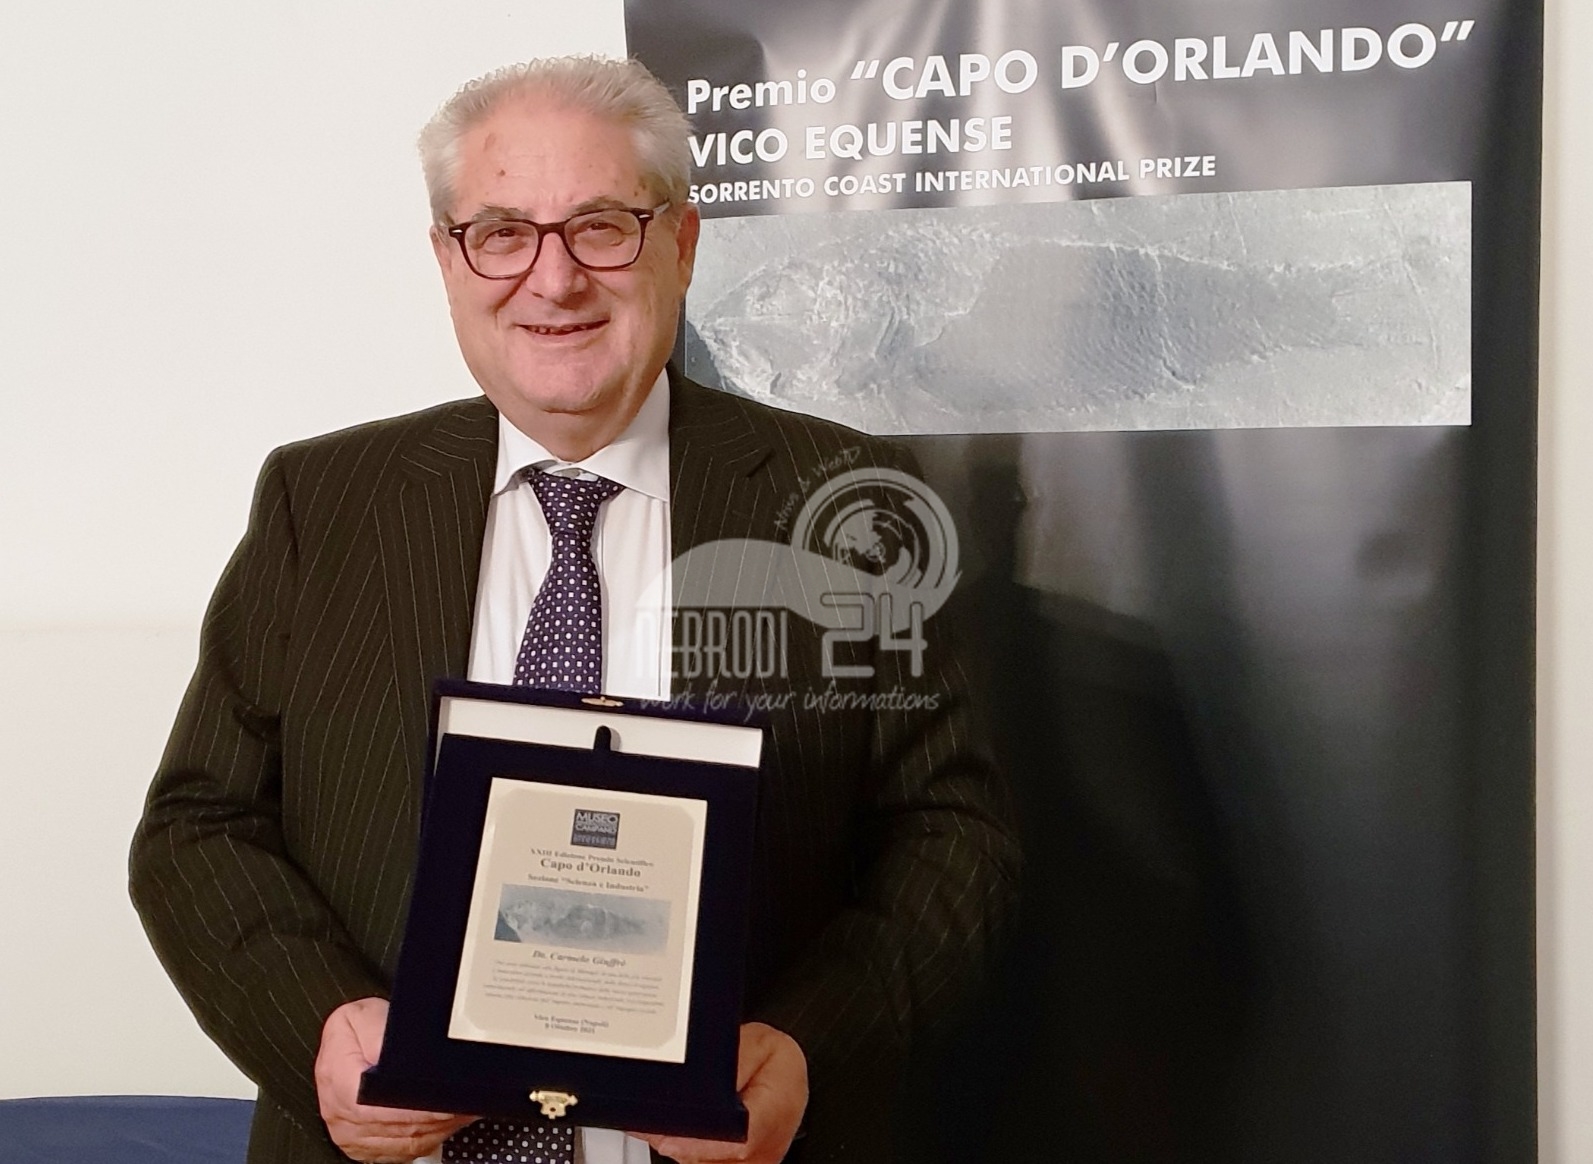 Capo D’Orlando – All’imprenditore orlandino Carmelo Giuffrè il Premio “Capo d’Orlando”